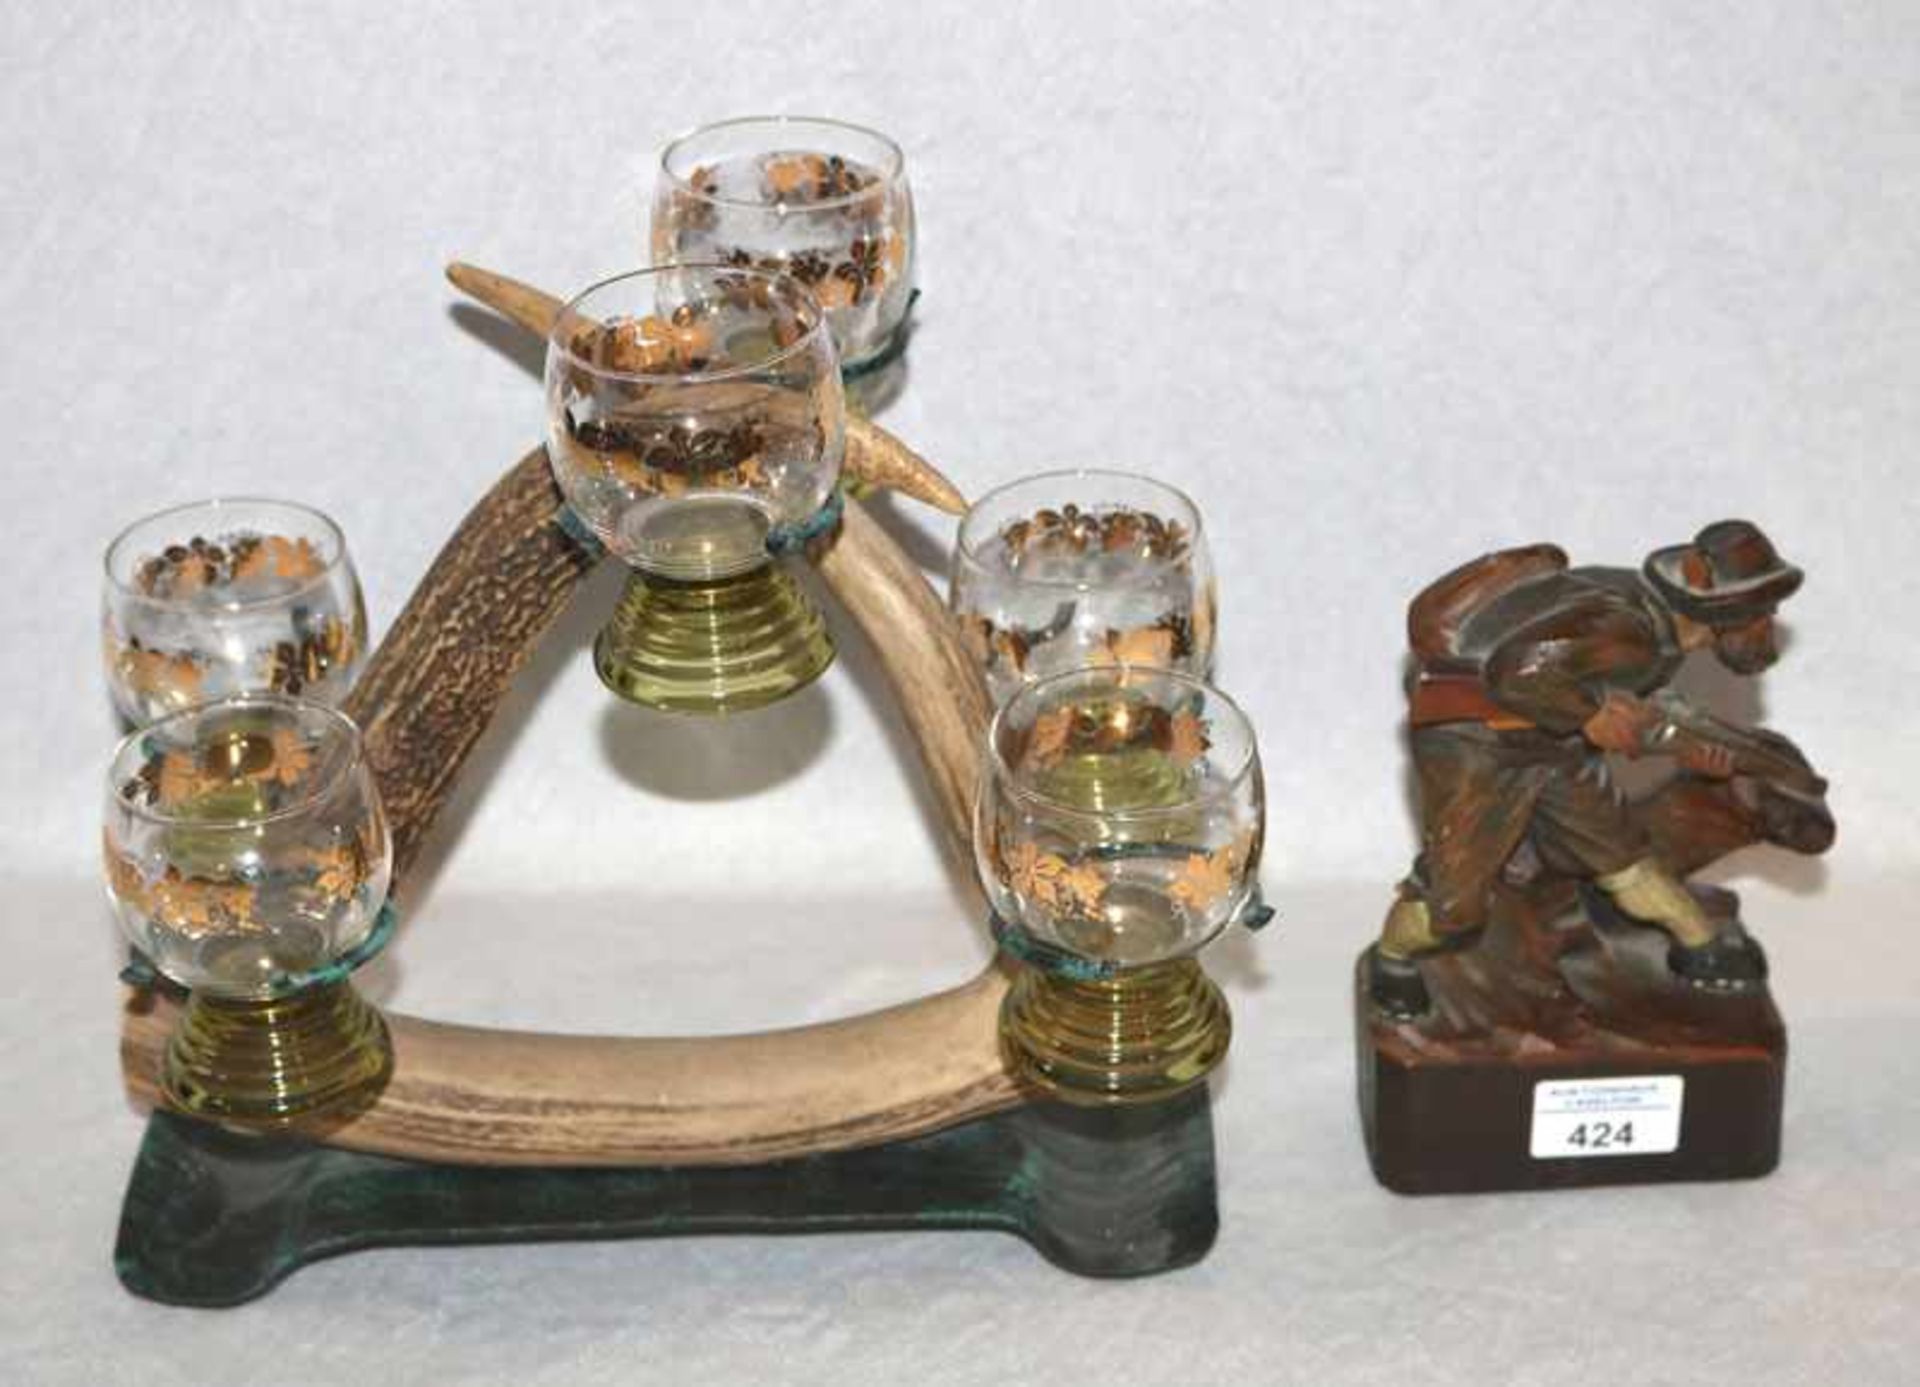 Hirschhorn Weinglasständer mit 6 Gläser, H 28 cm, L 30 cm, B 21 cm, und Holzfigur 'Jäger', dunkel